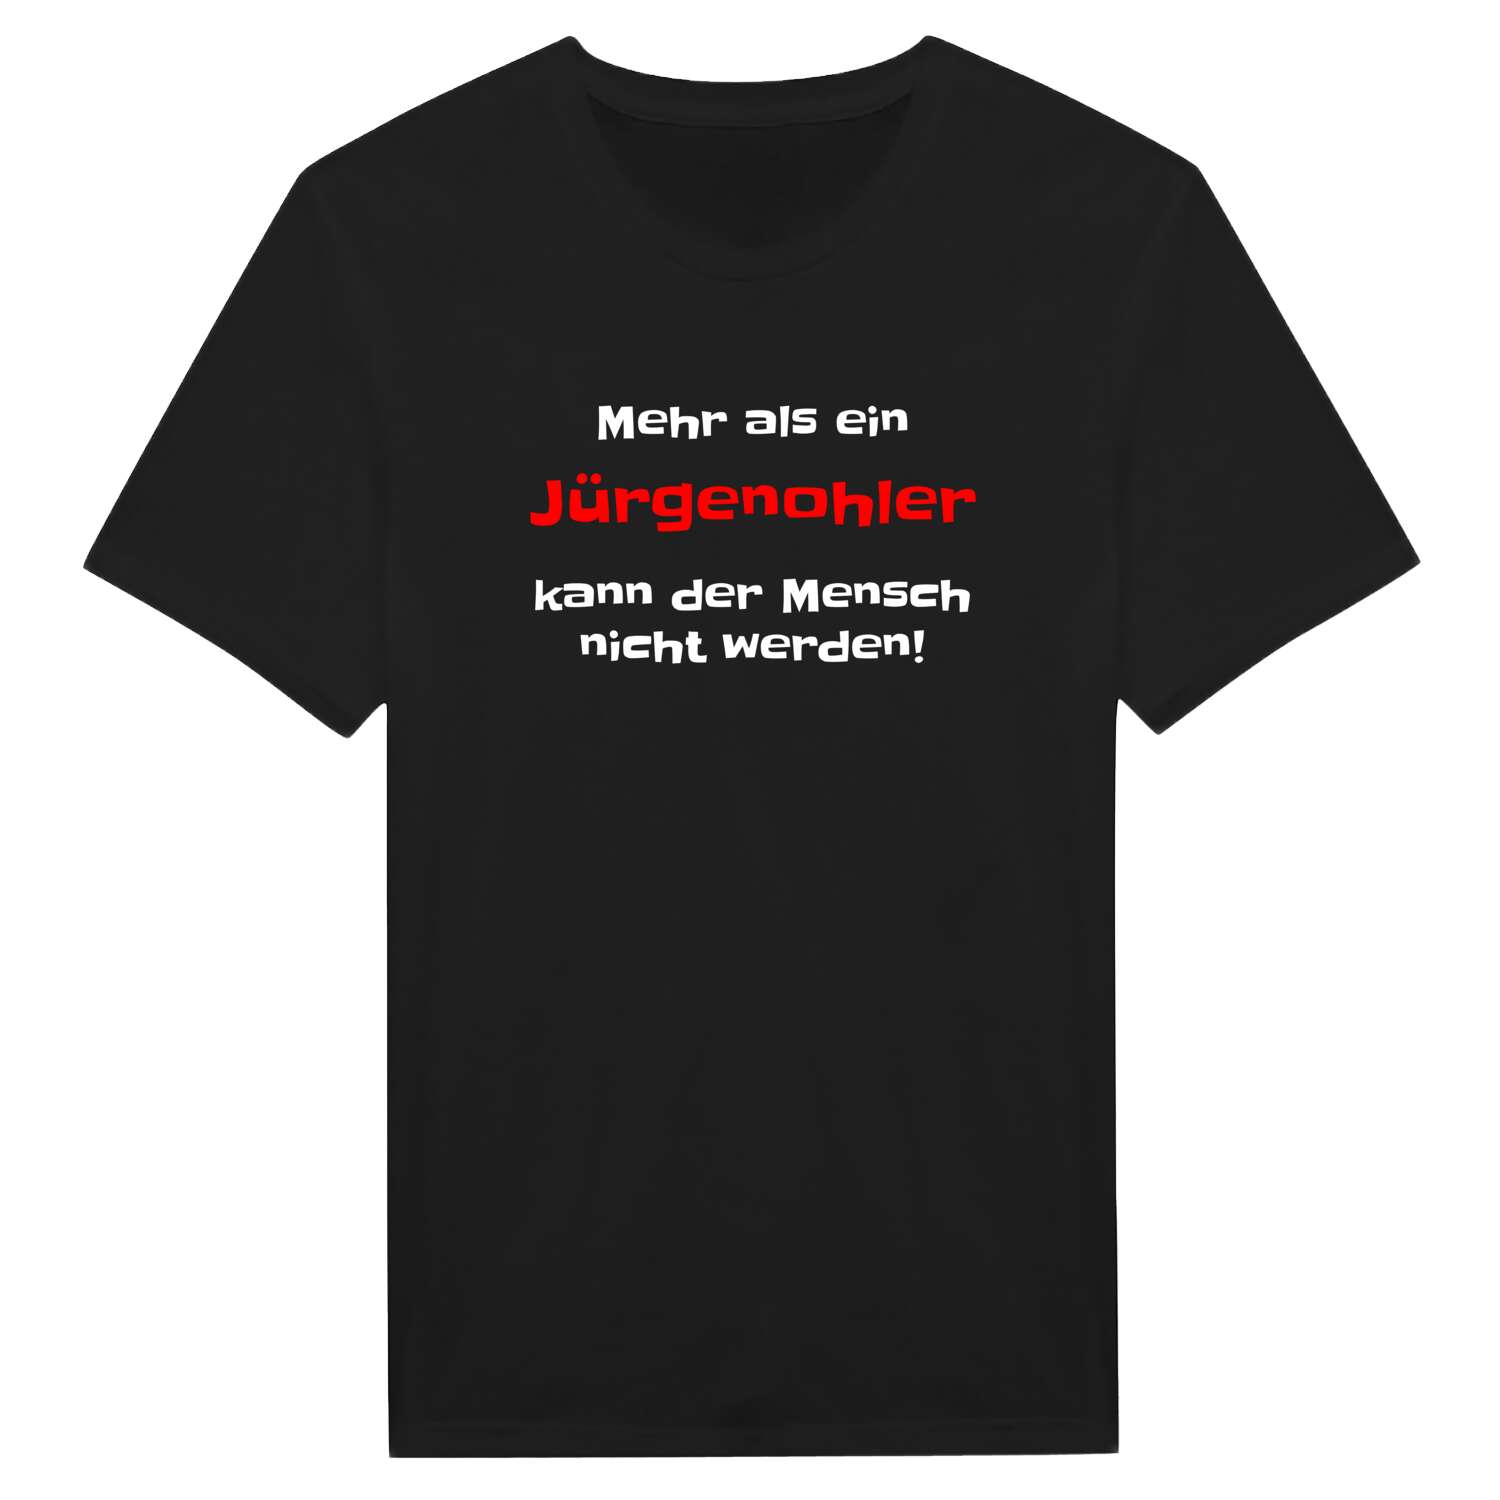 Jürgenohl T-Shirt »Mehr als ein«